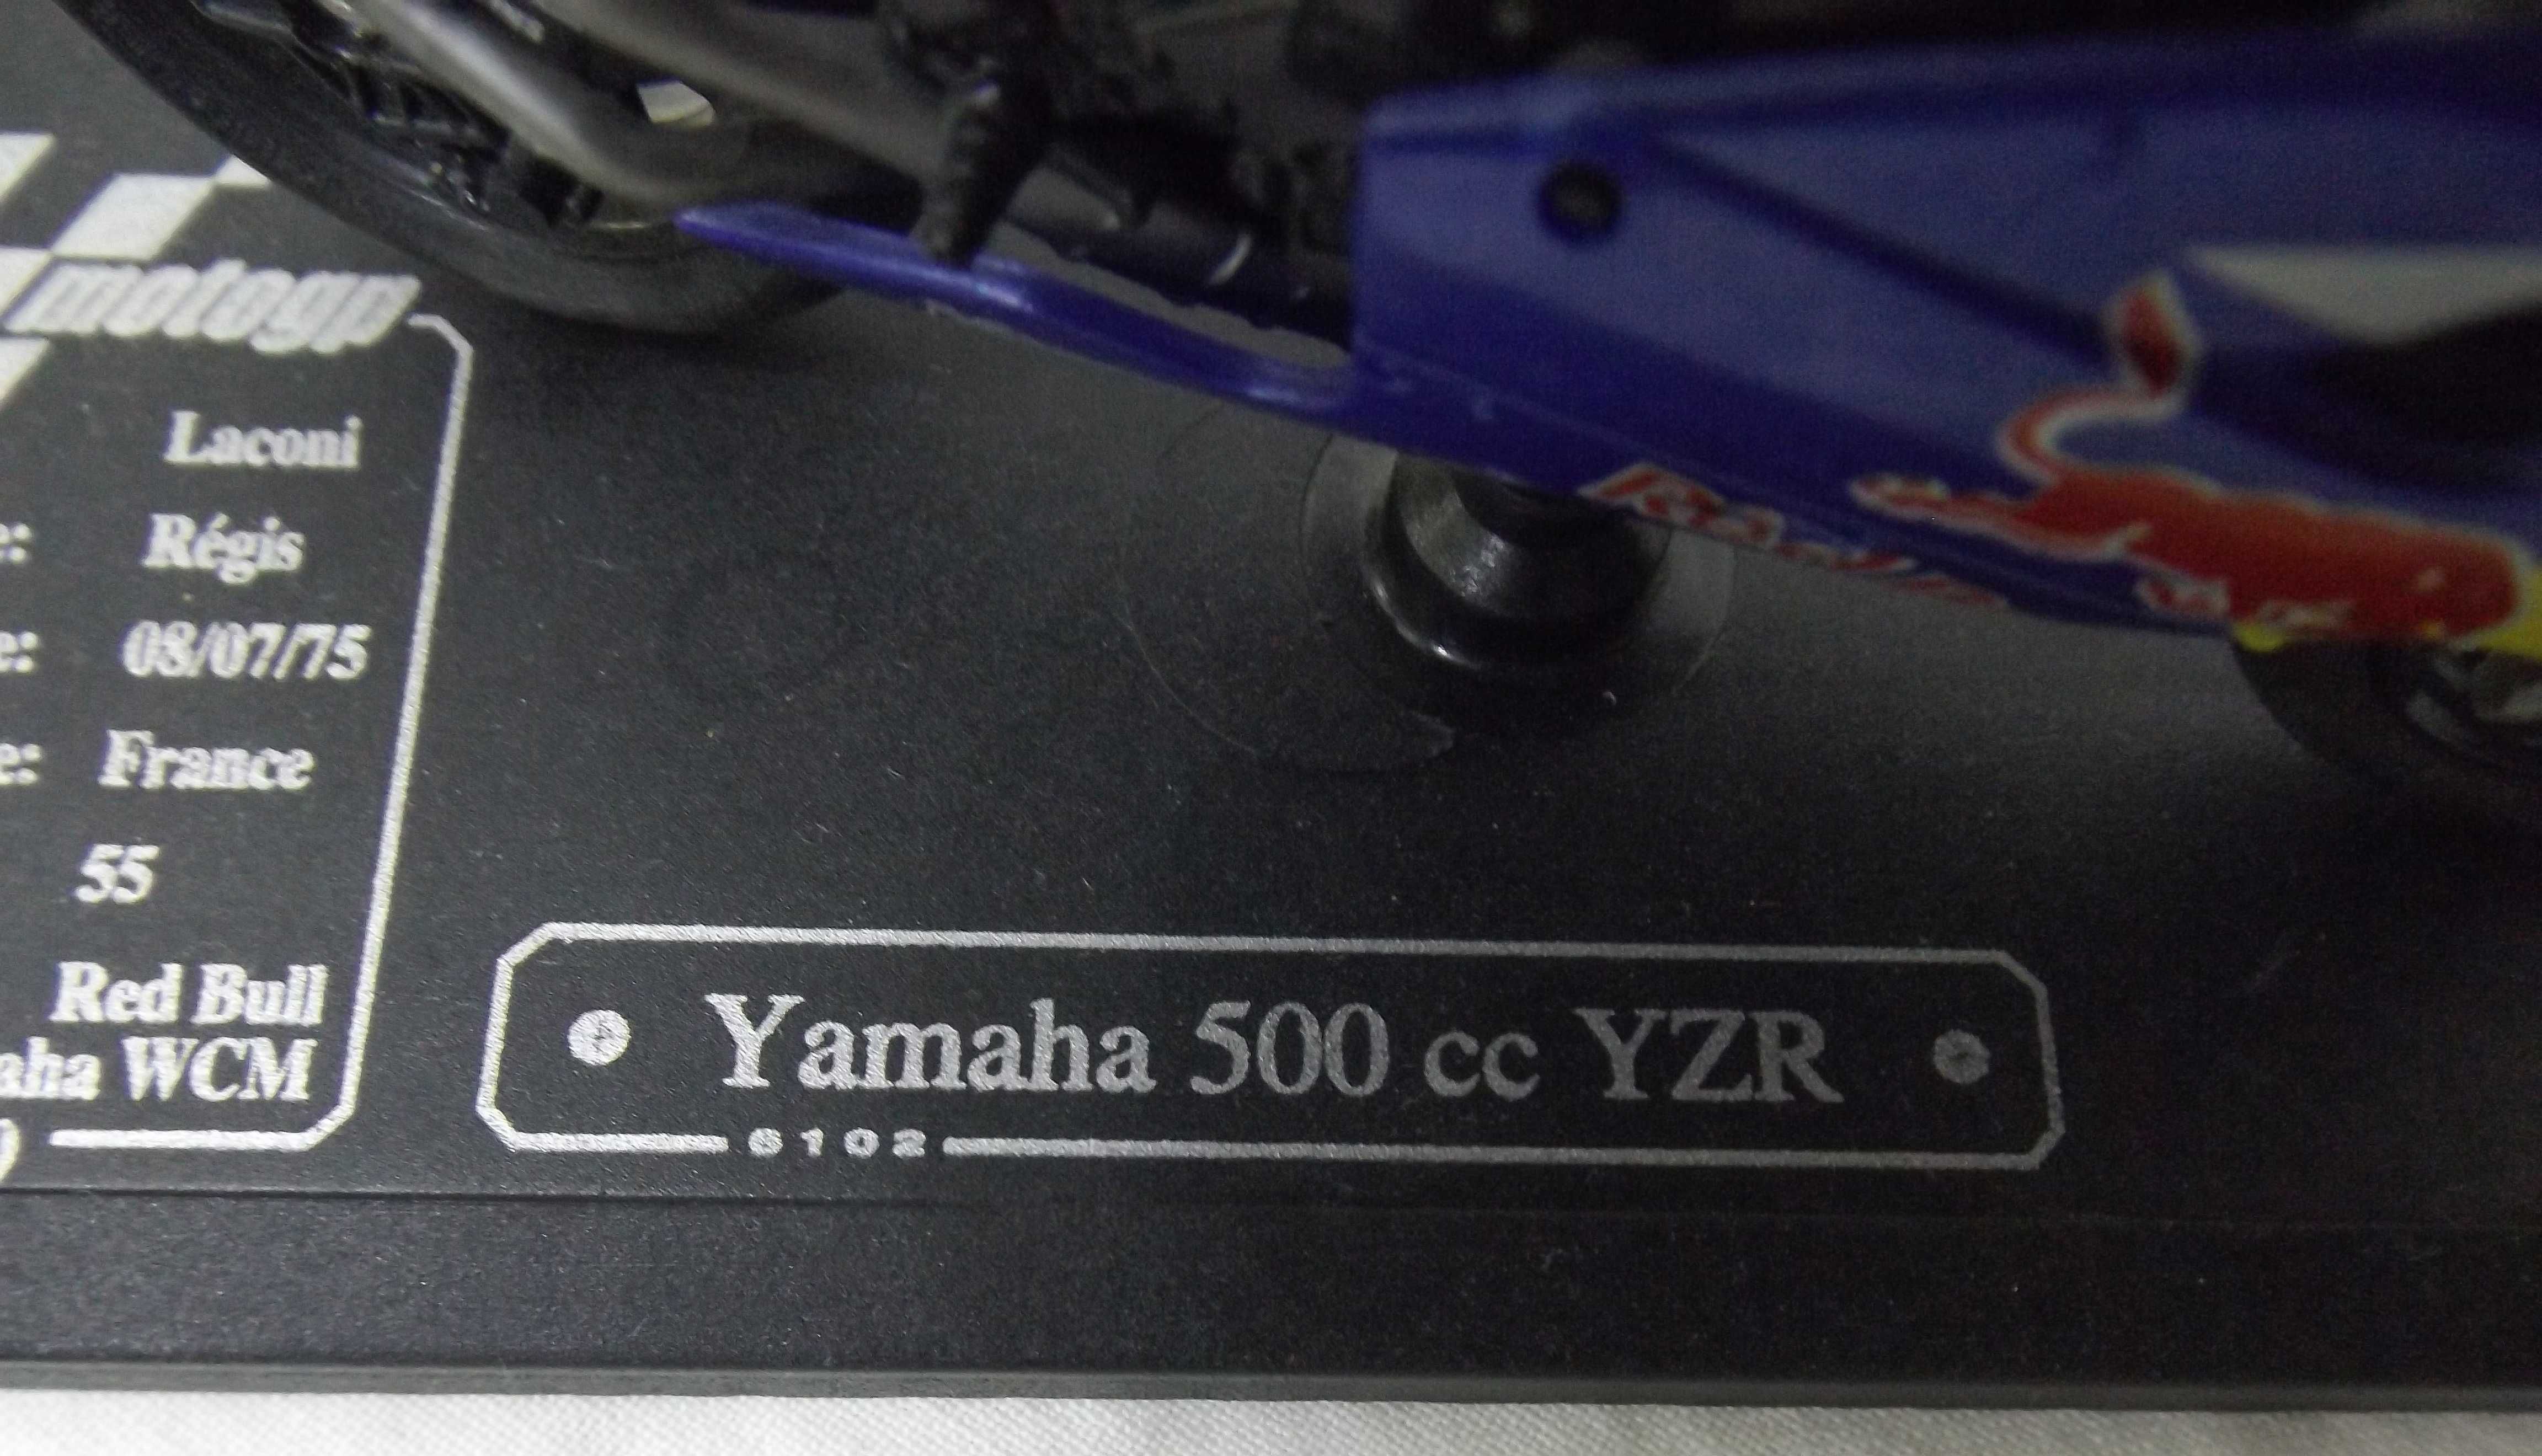 Macheta Yamaha YZR 500cc MotoGP 1/18 Laconi Regis